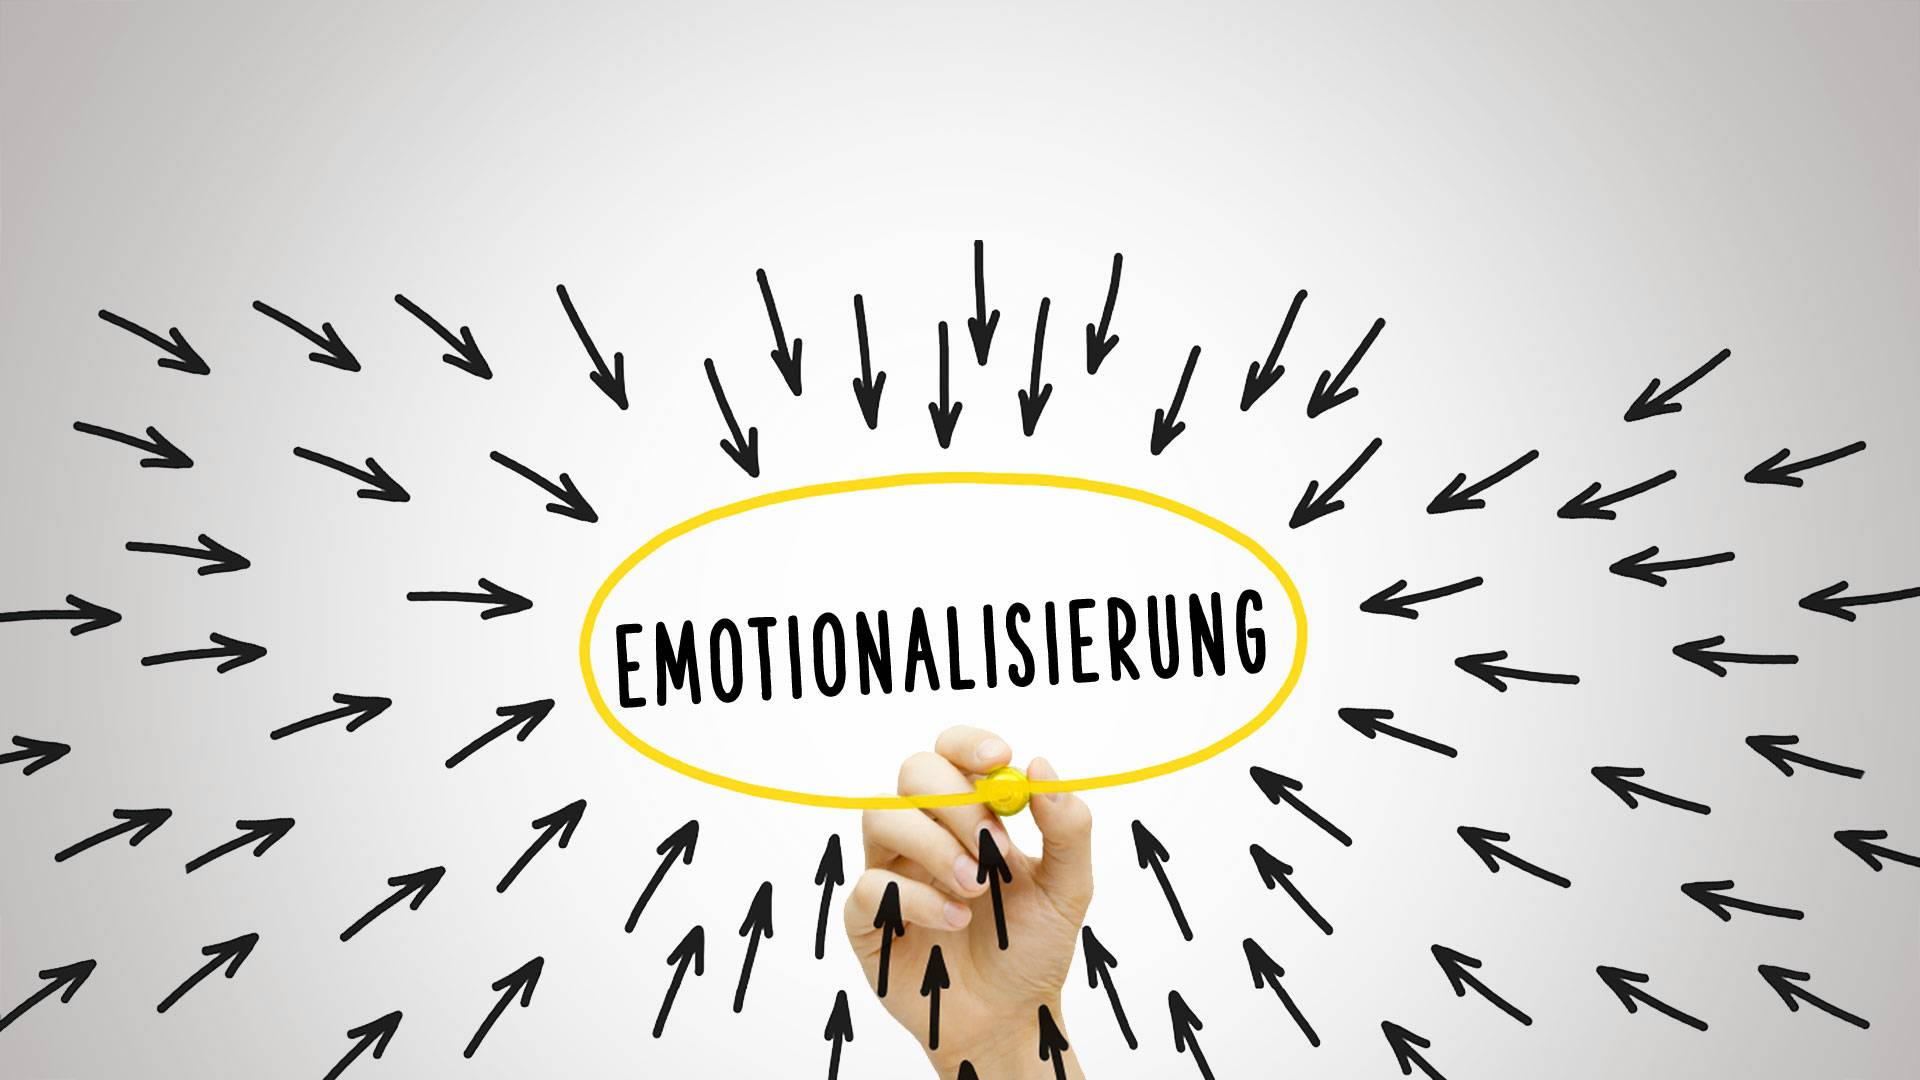 l_jkt-master-emotionalisierung Verkauf To Go - Master - Slogantechnik Emotionalisierung